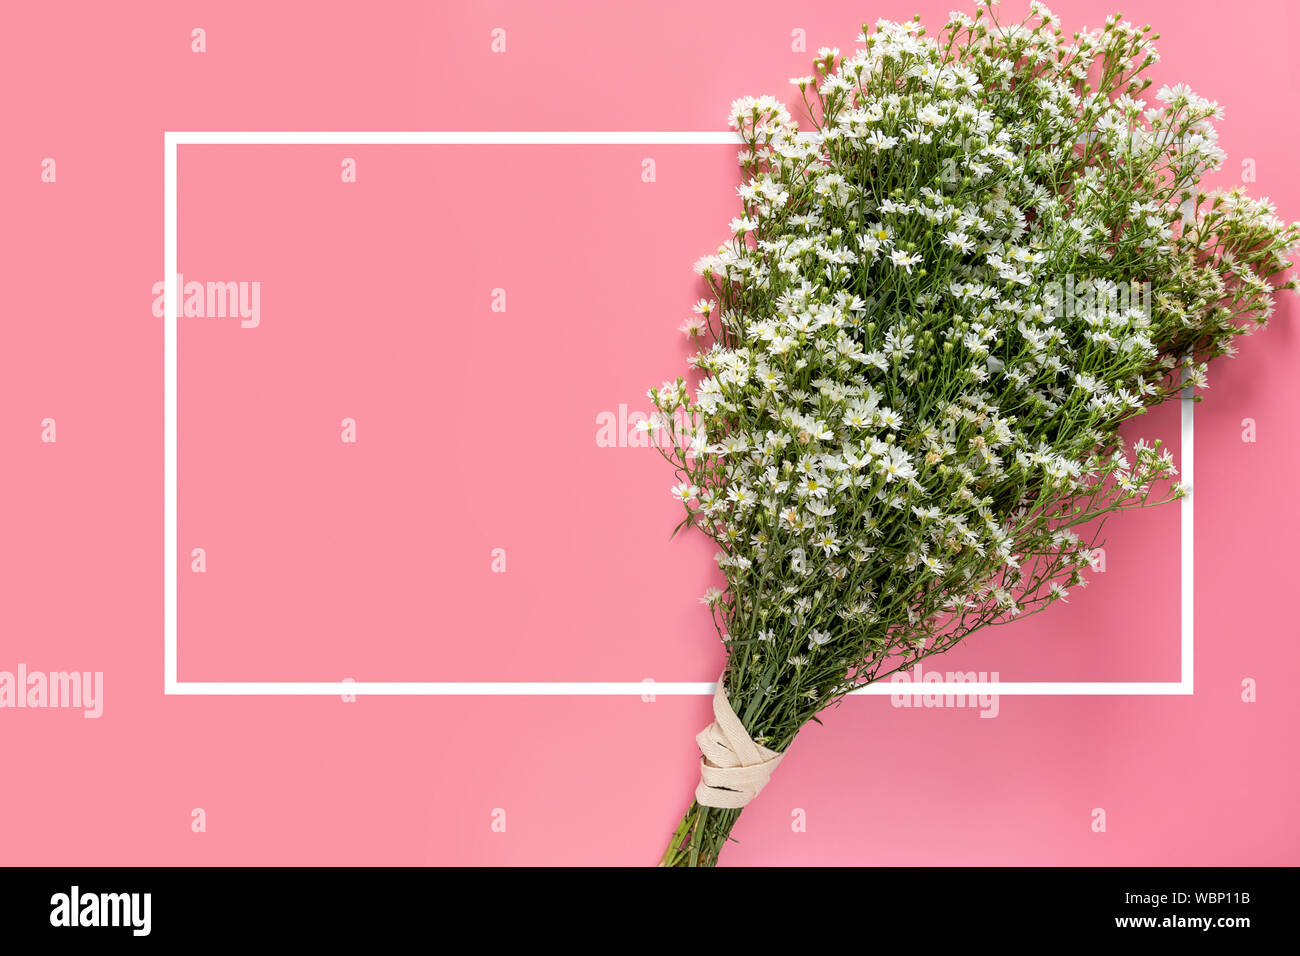 Créatrice d'un minimum de frais de printemps bouquet de fleurs blanc isolé sur fond rose avec bordure blanche et du châssis de l'espace pour copier du texte sur carte de vœux ou Banque D'Images